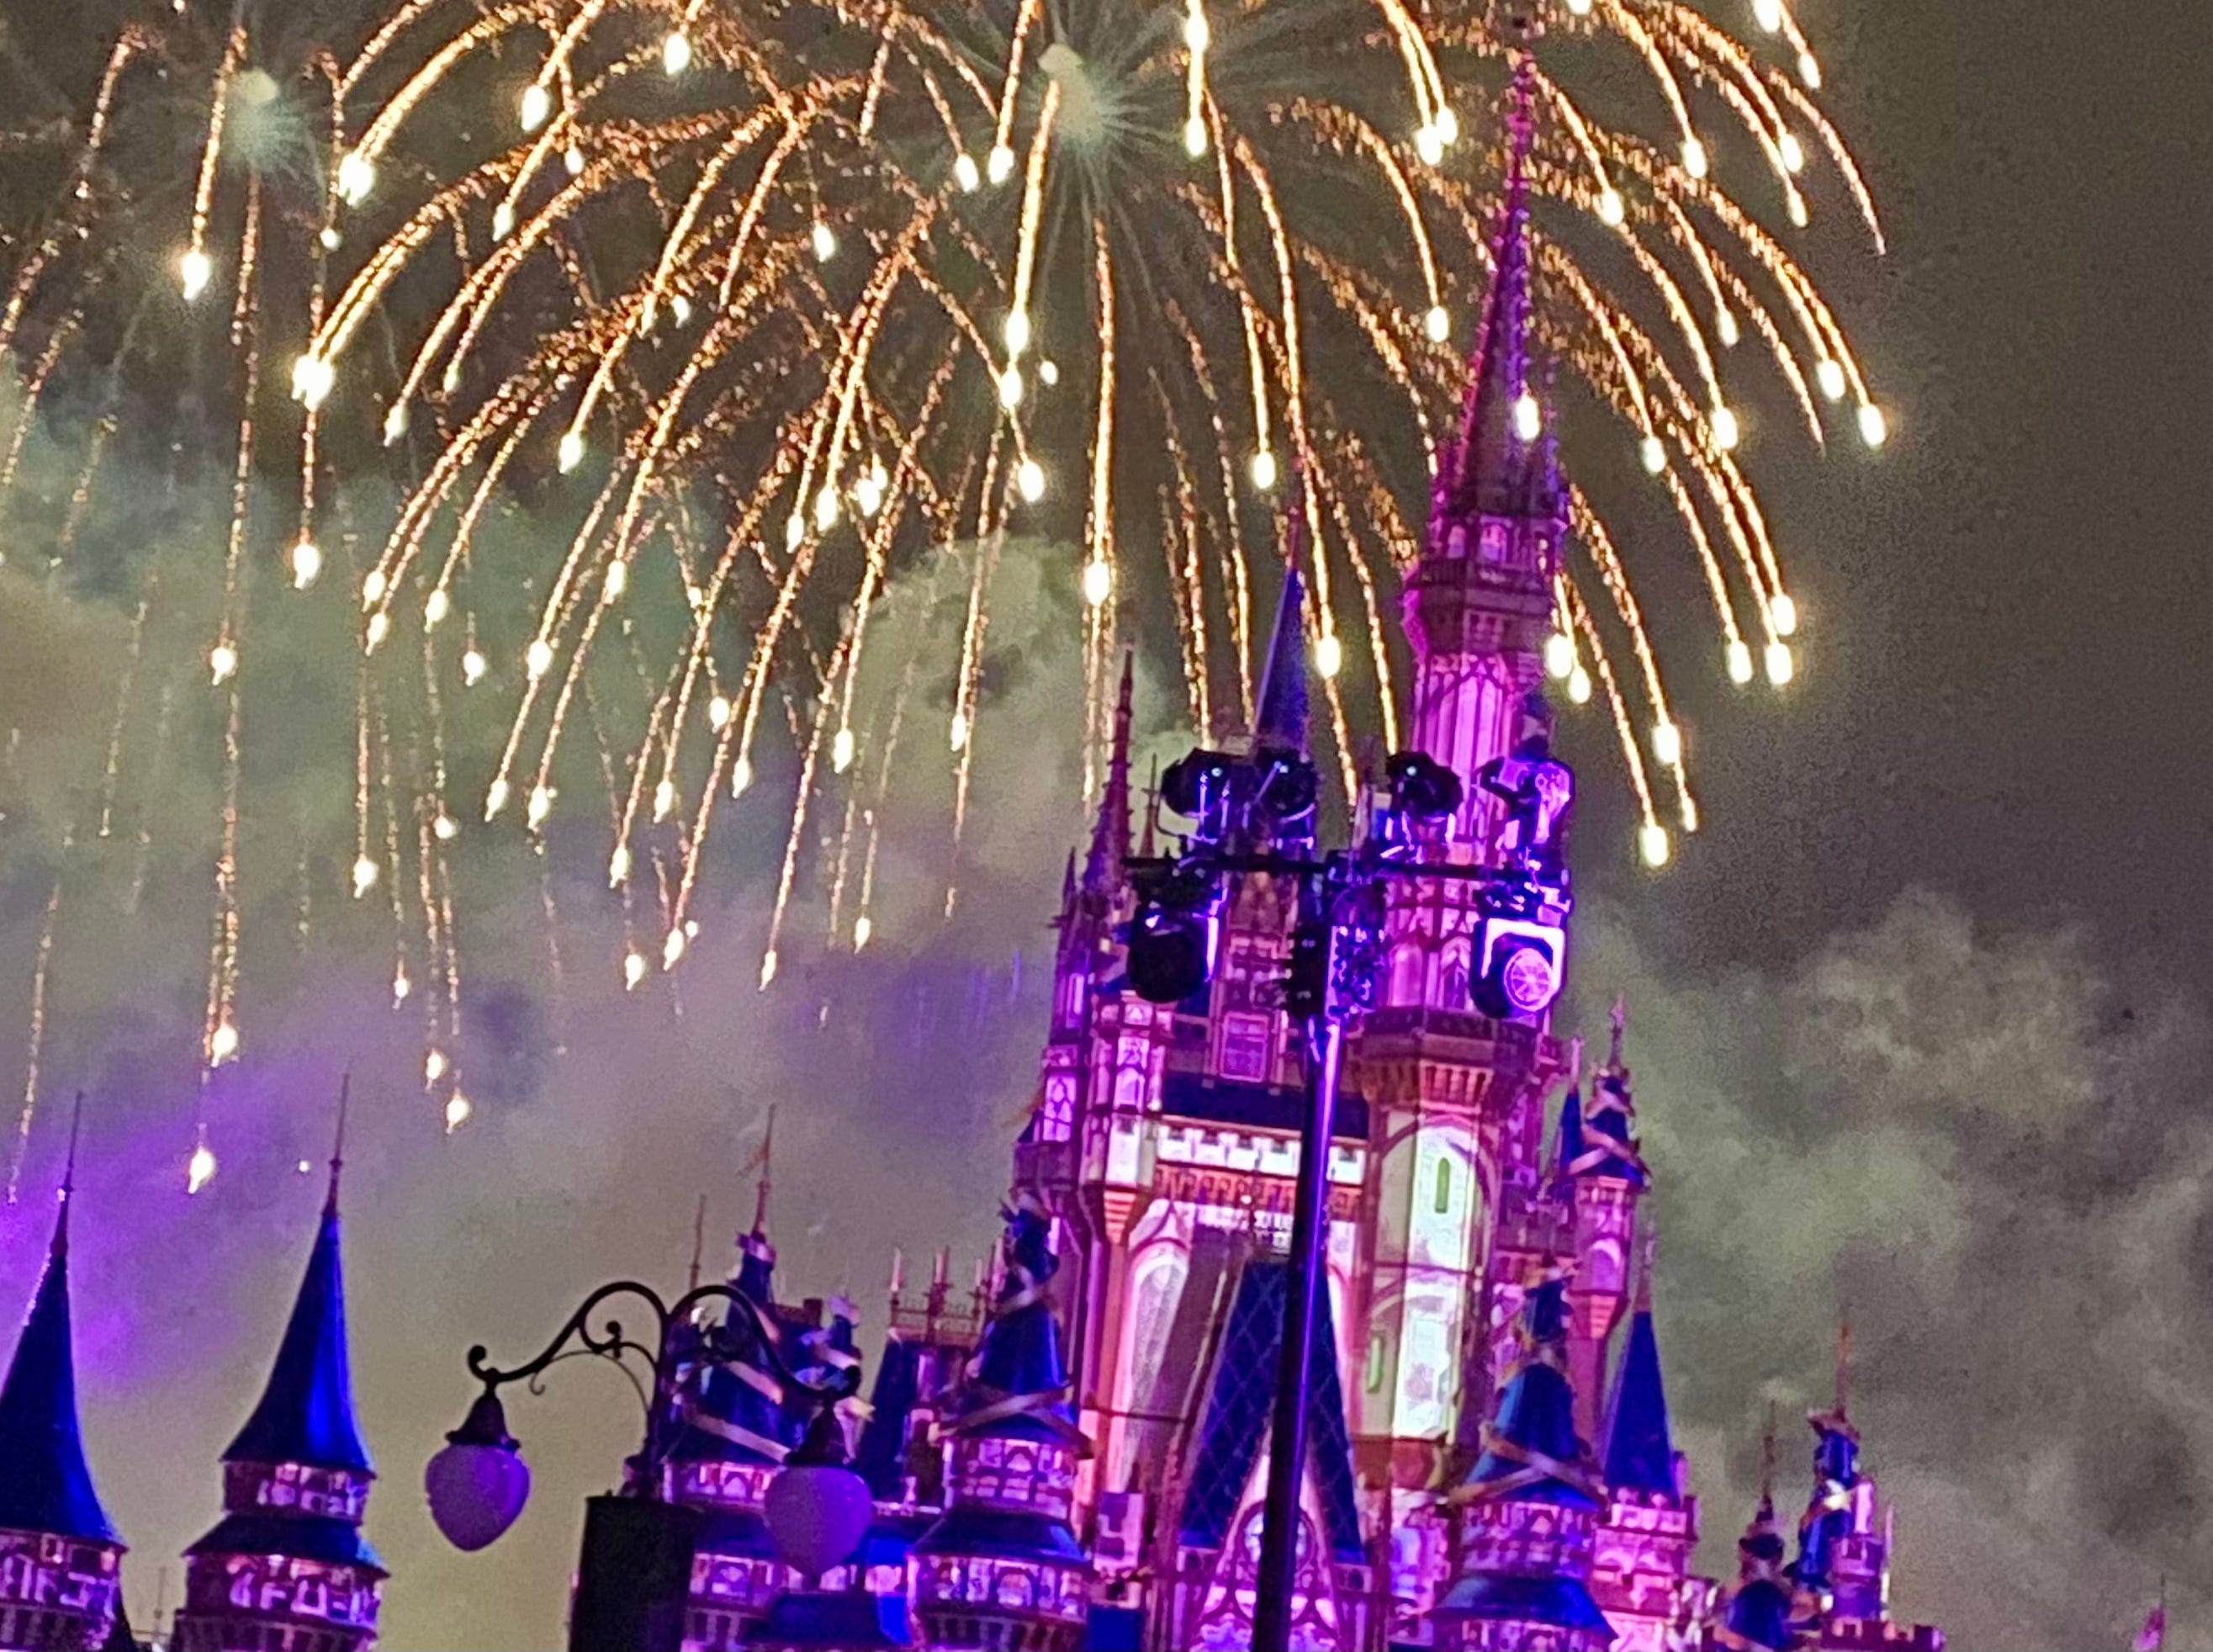 Bild eines Feuerwerks im Magic Kingdom bei Disney.  Das Schloss wird von violetten Lichtern beleuchtet und das Feuerwerk ist goldfarben.